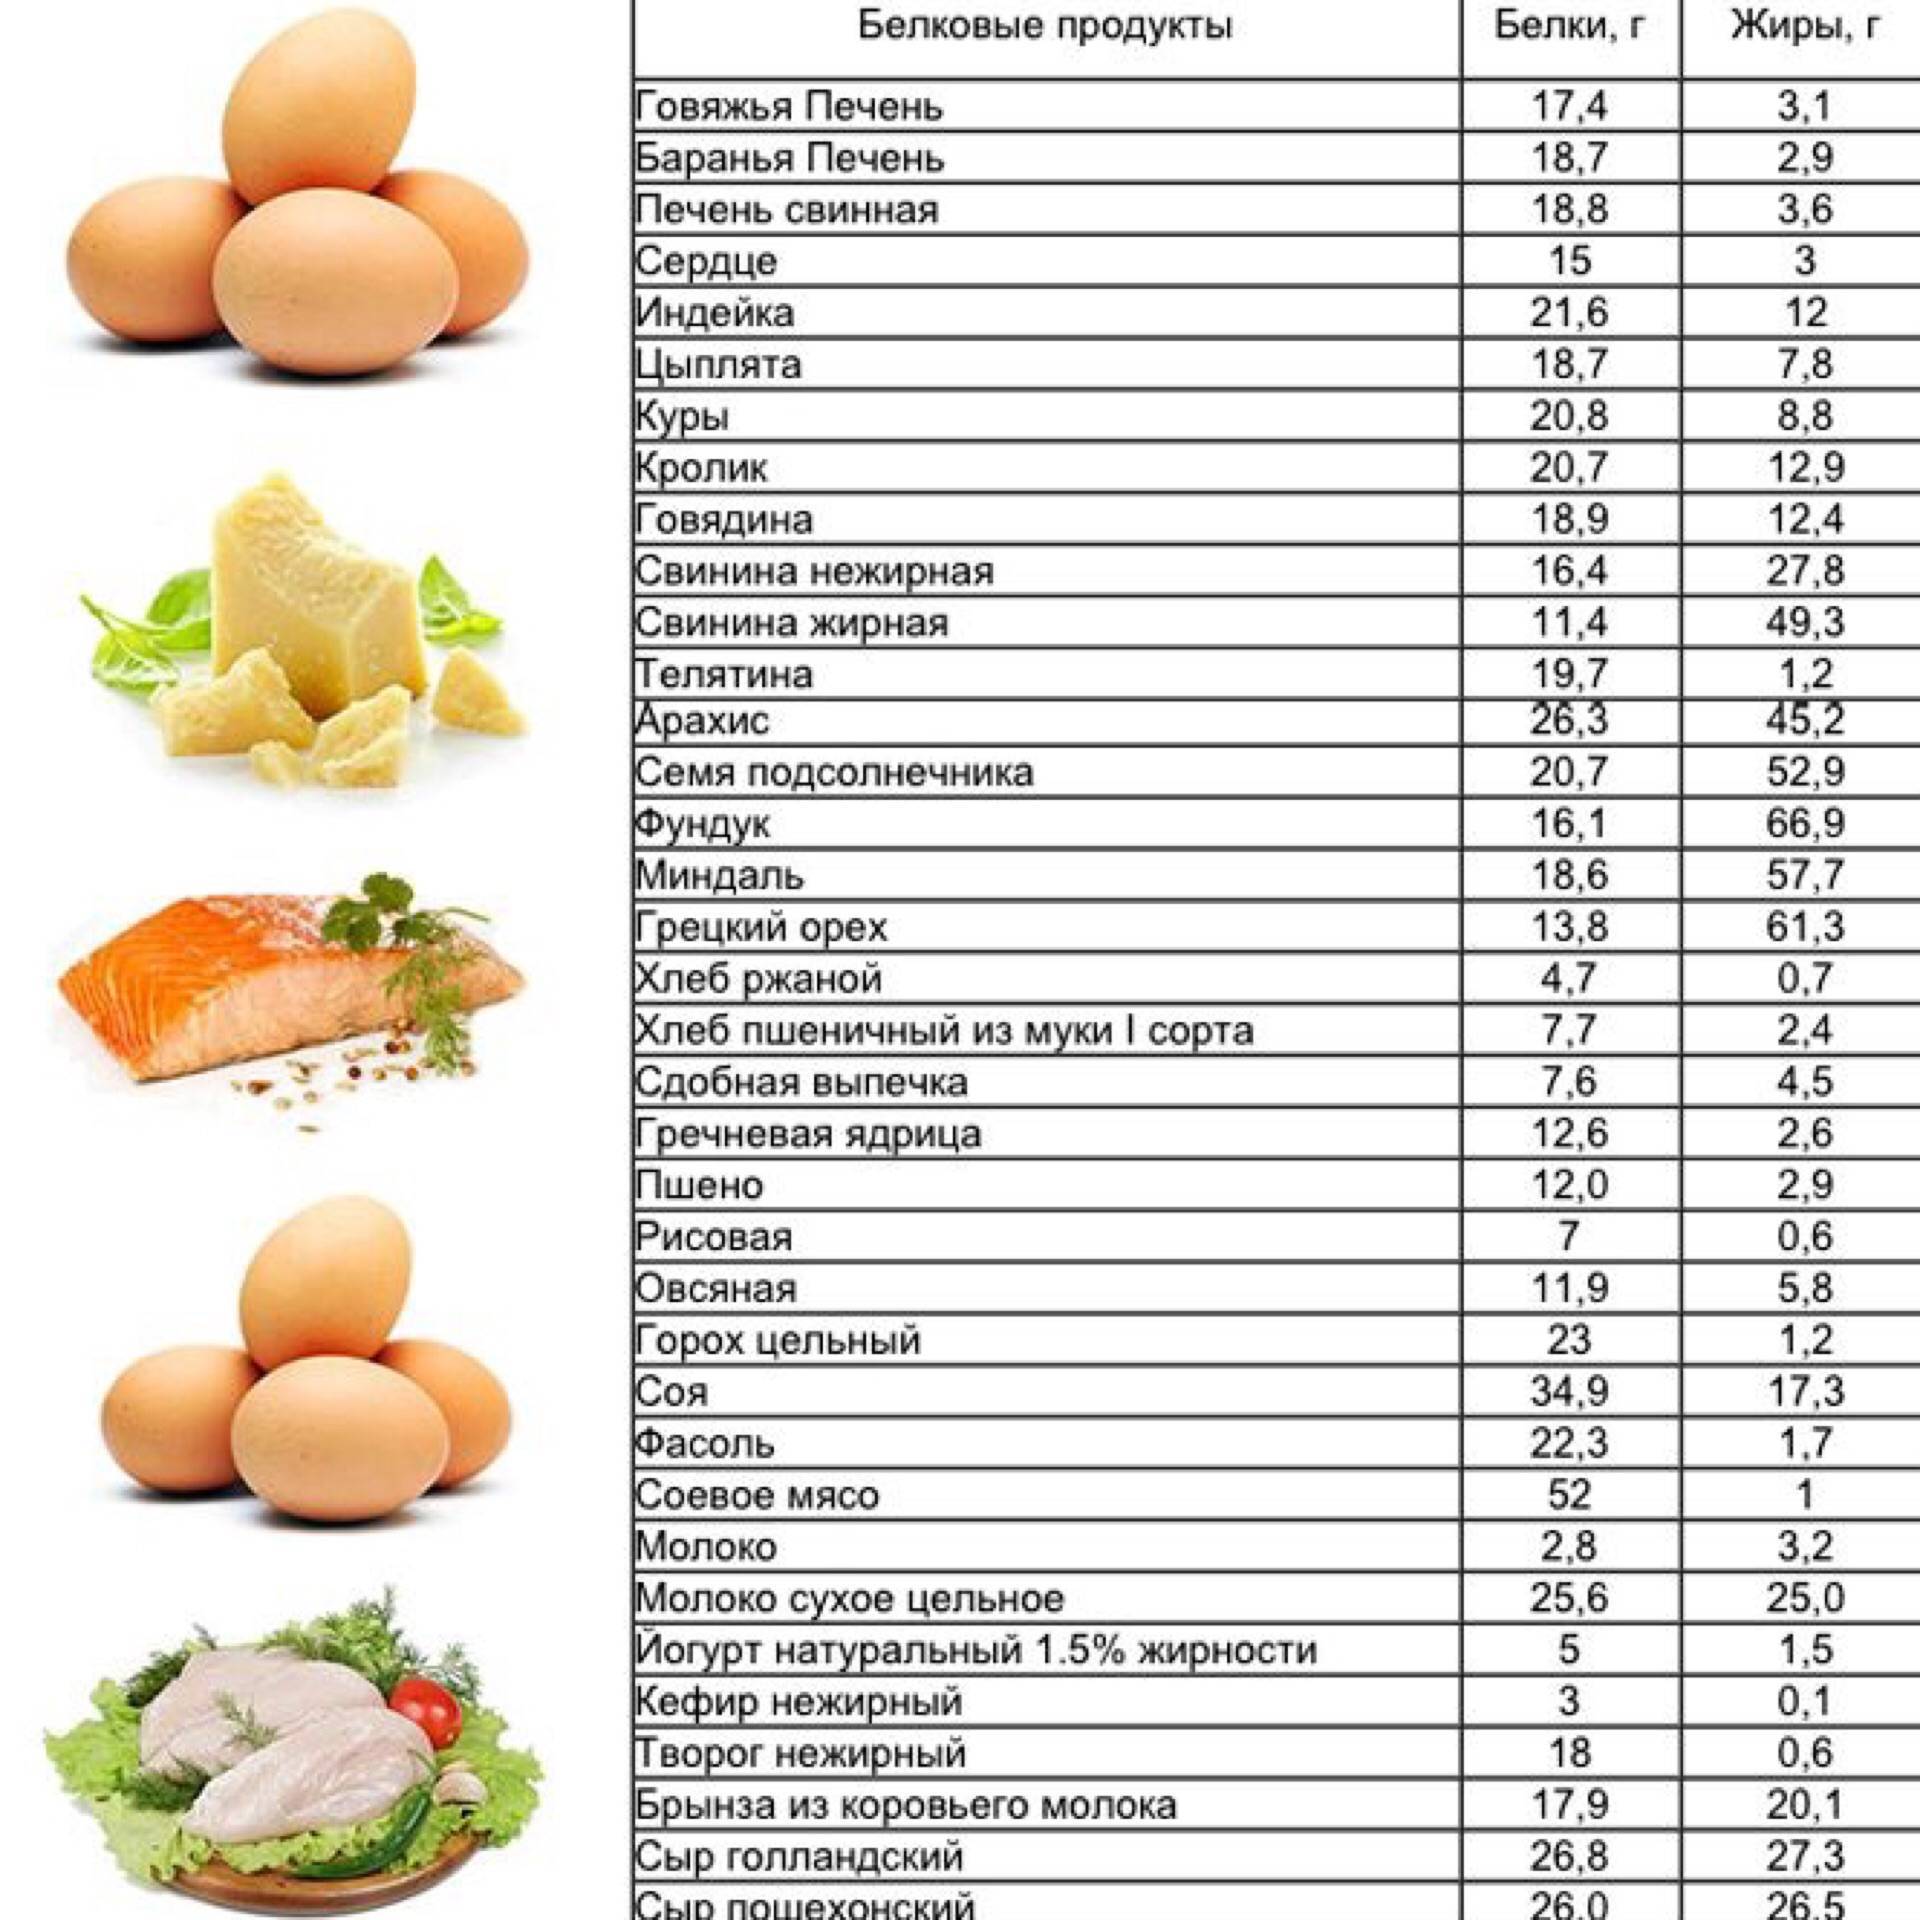 Диетические продукты: список для похудения, рецепты приготовления блюд в домашних условиях